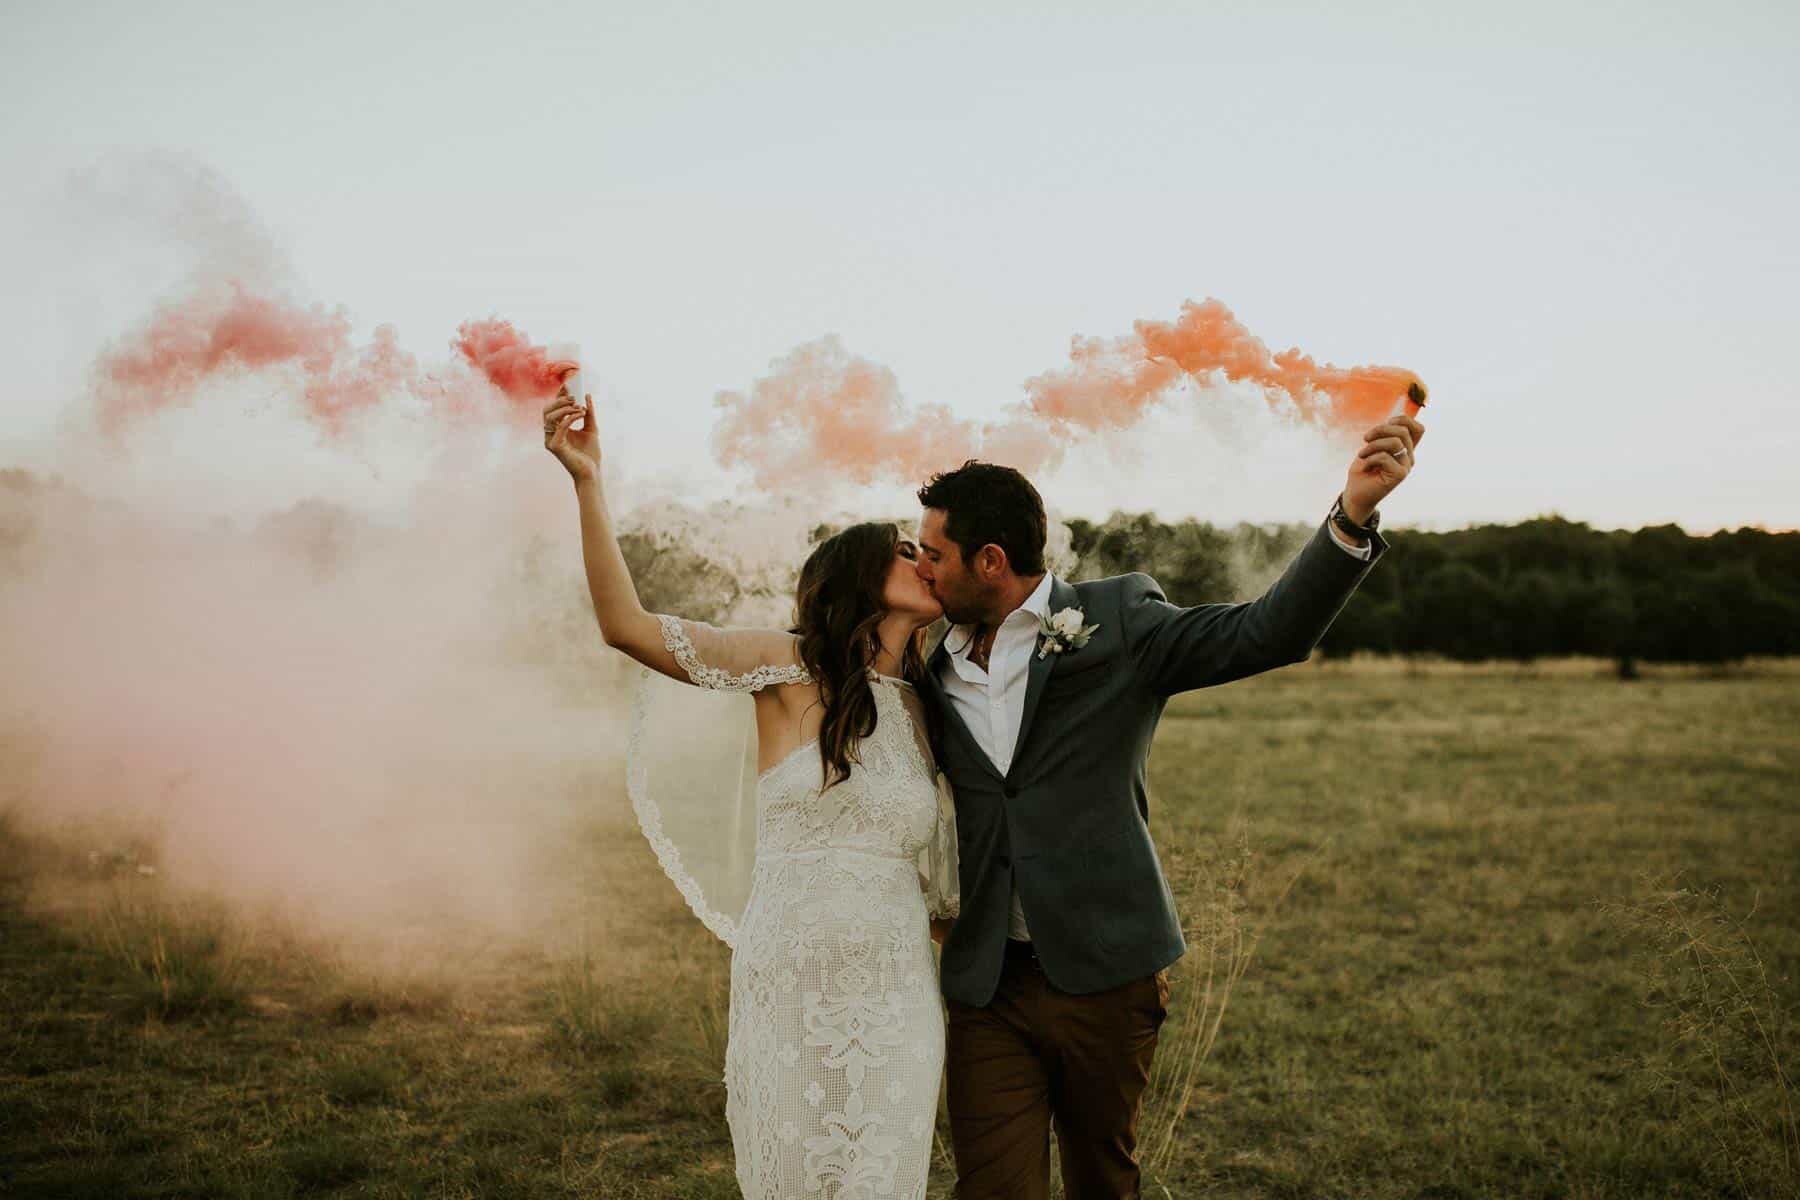 wedding photography with pink smoke bombs